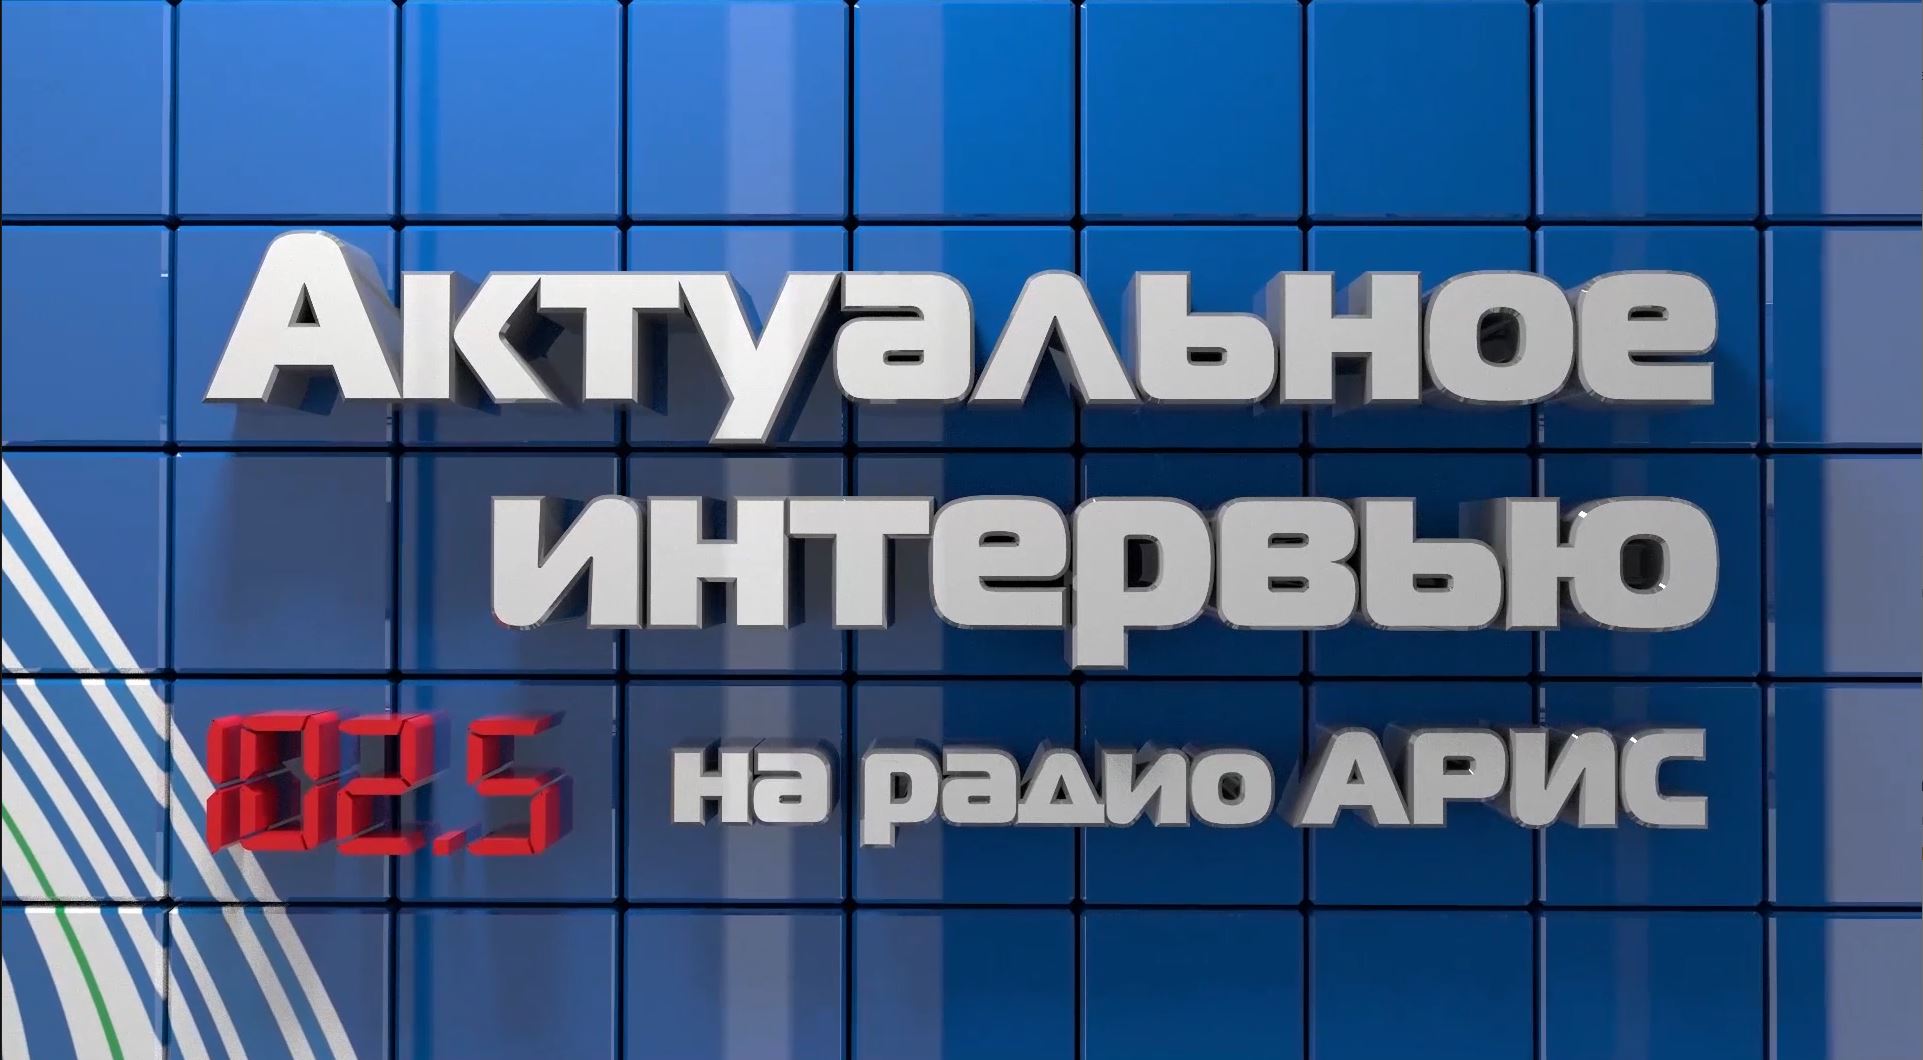 Актуальное интервью по версии "Радио "АРИС" с Михаилом Подковко.